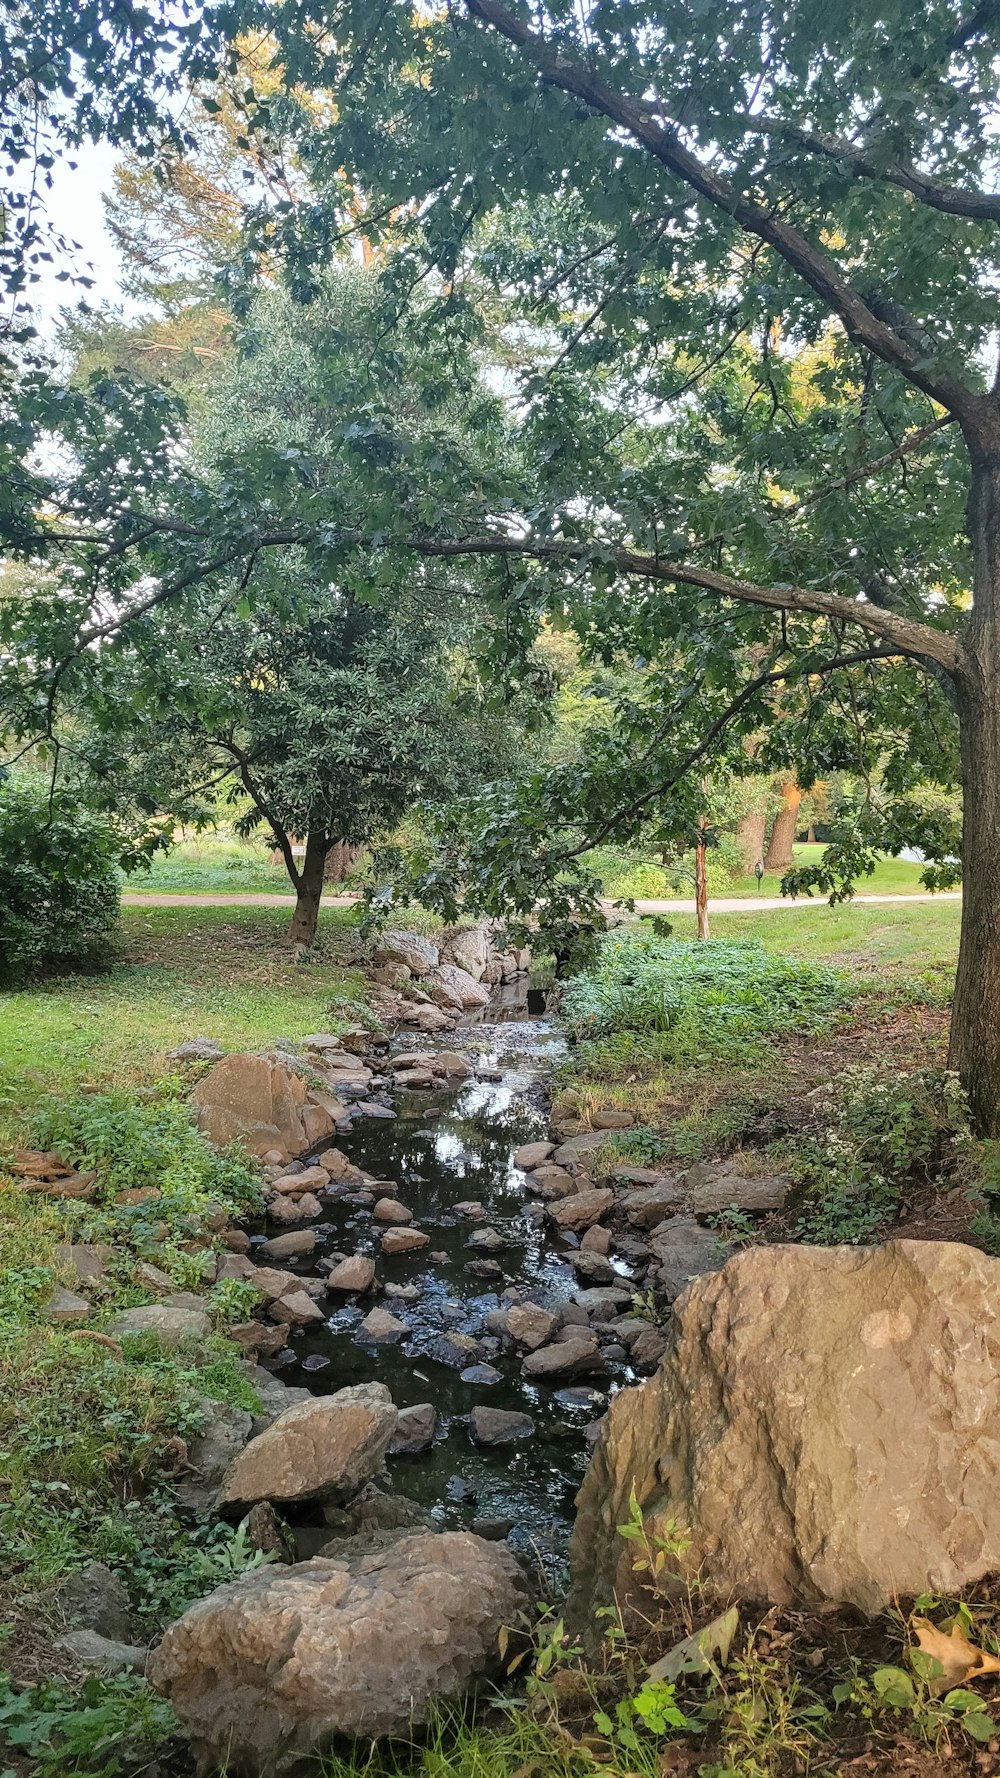 a stream running through a lush green park